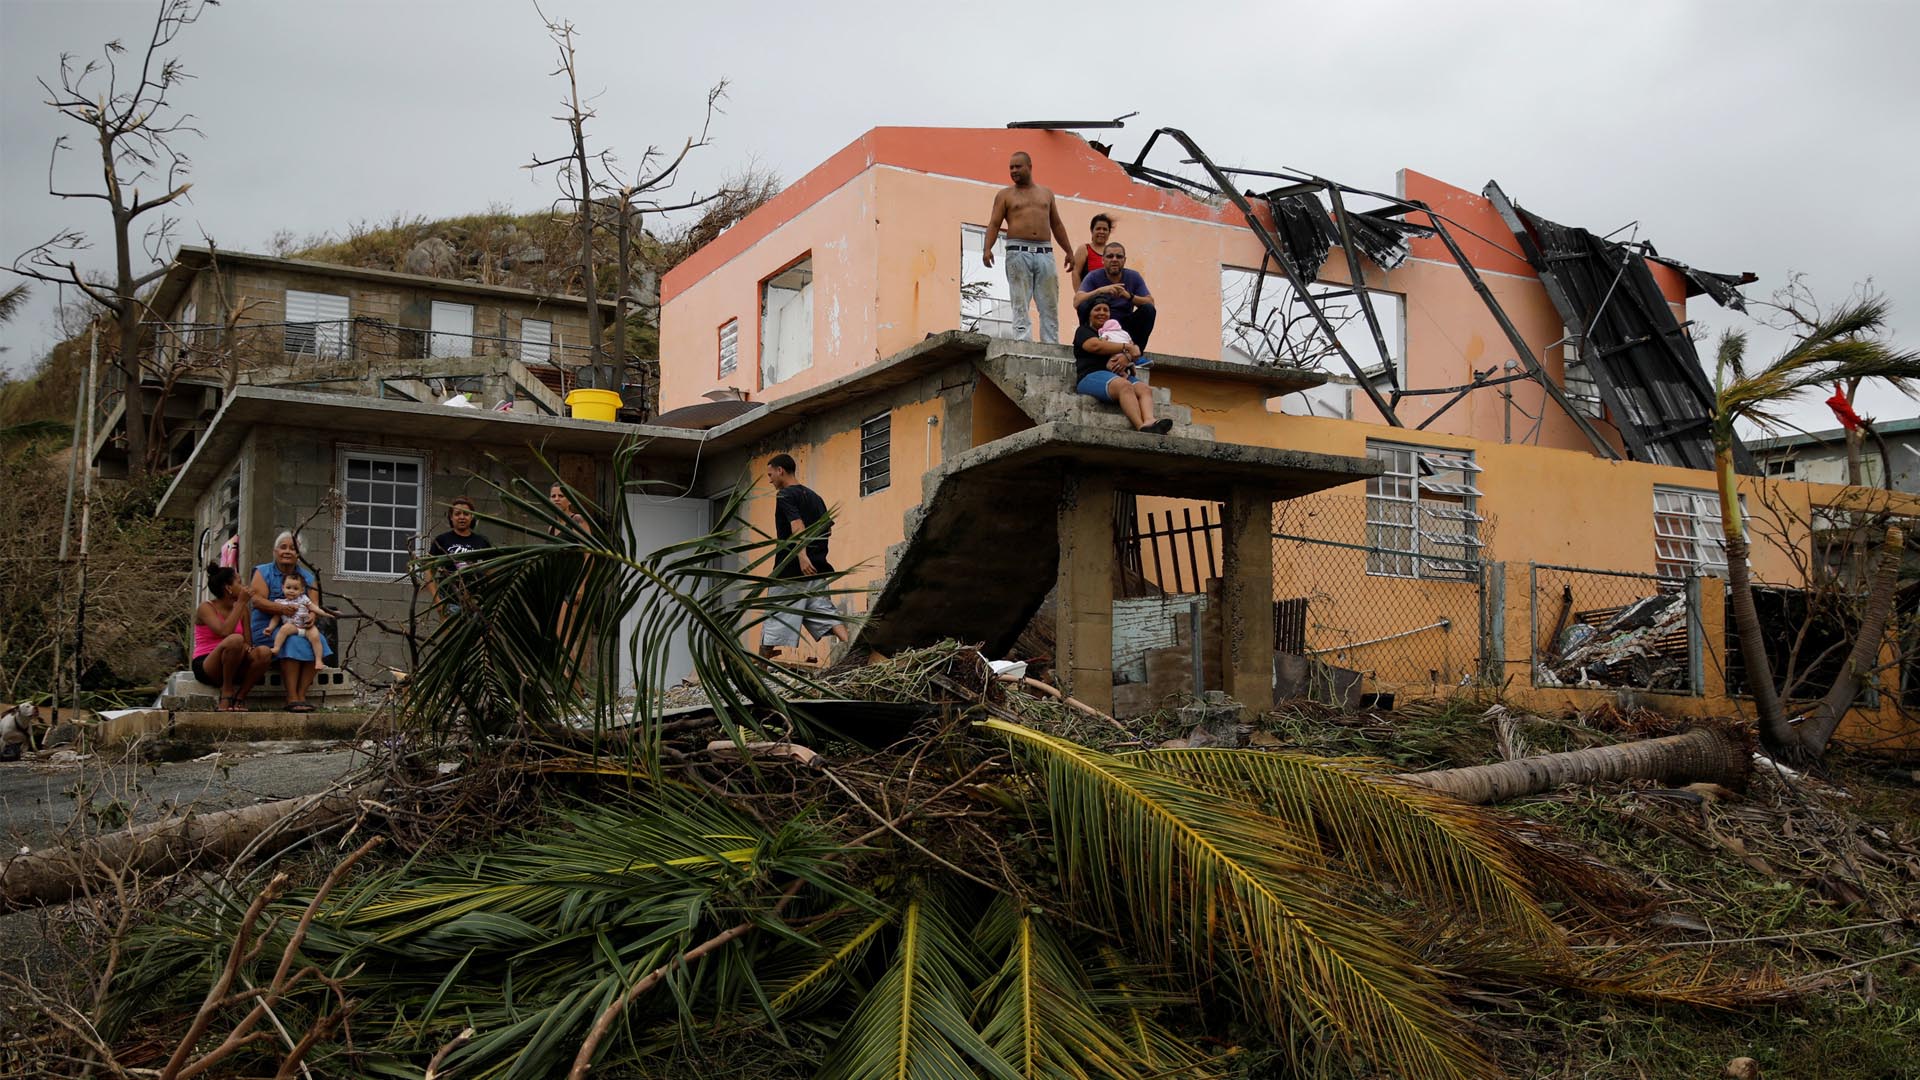 Las catástrofes en México y el Caribe por los huracanes costarán 95.000 millones de dólares